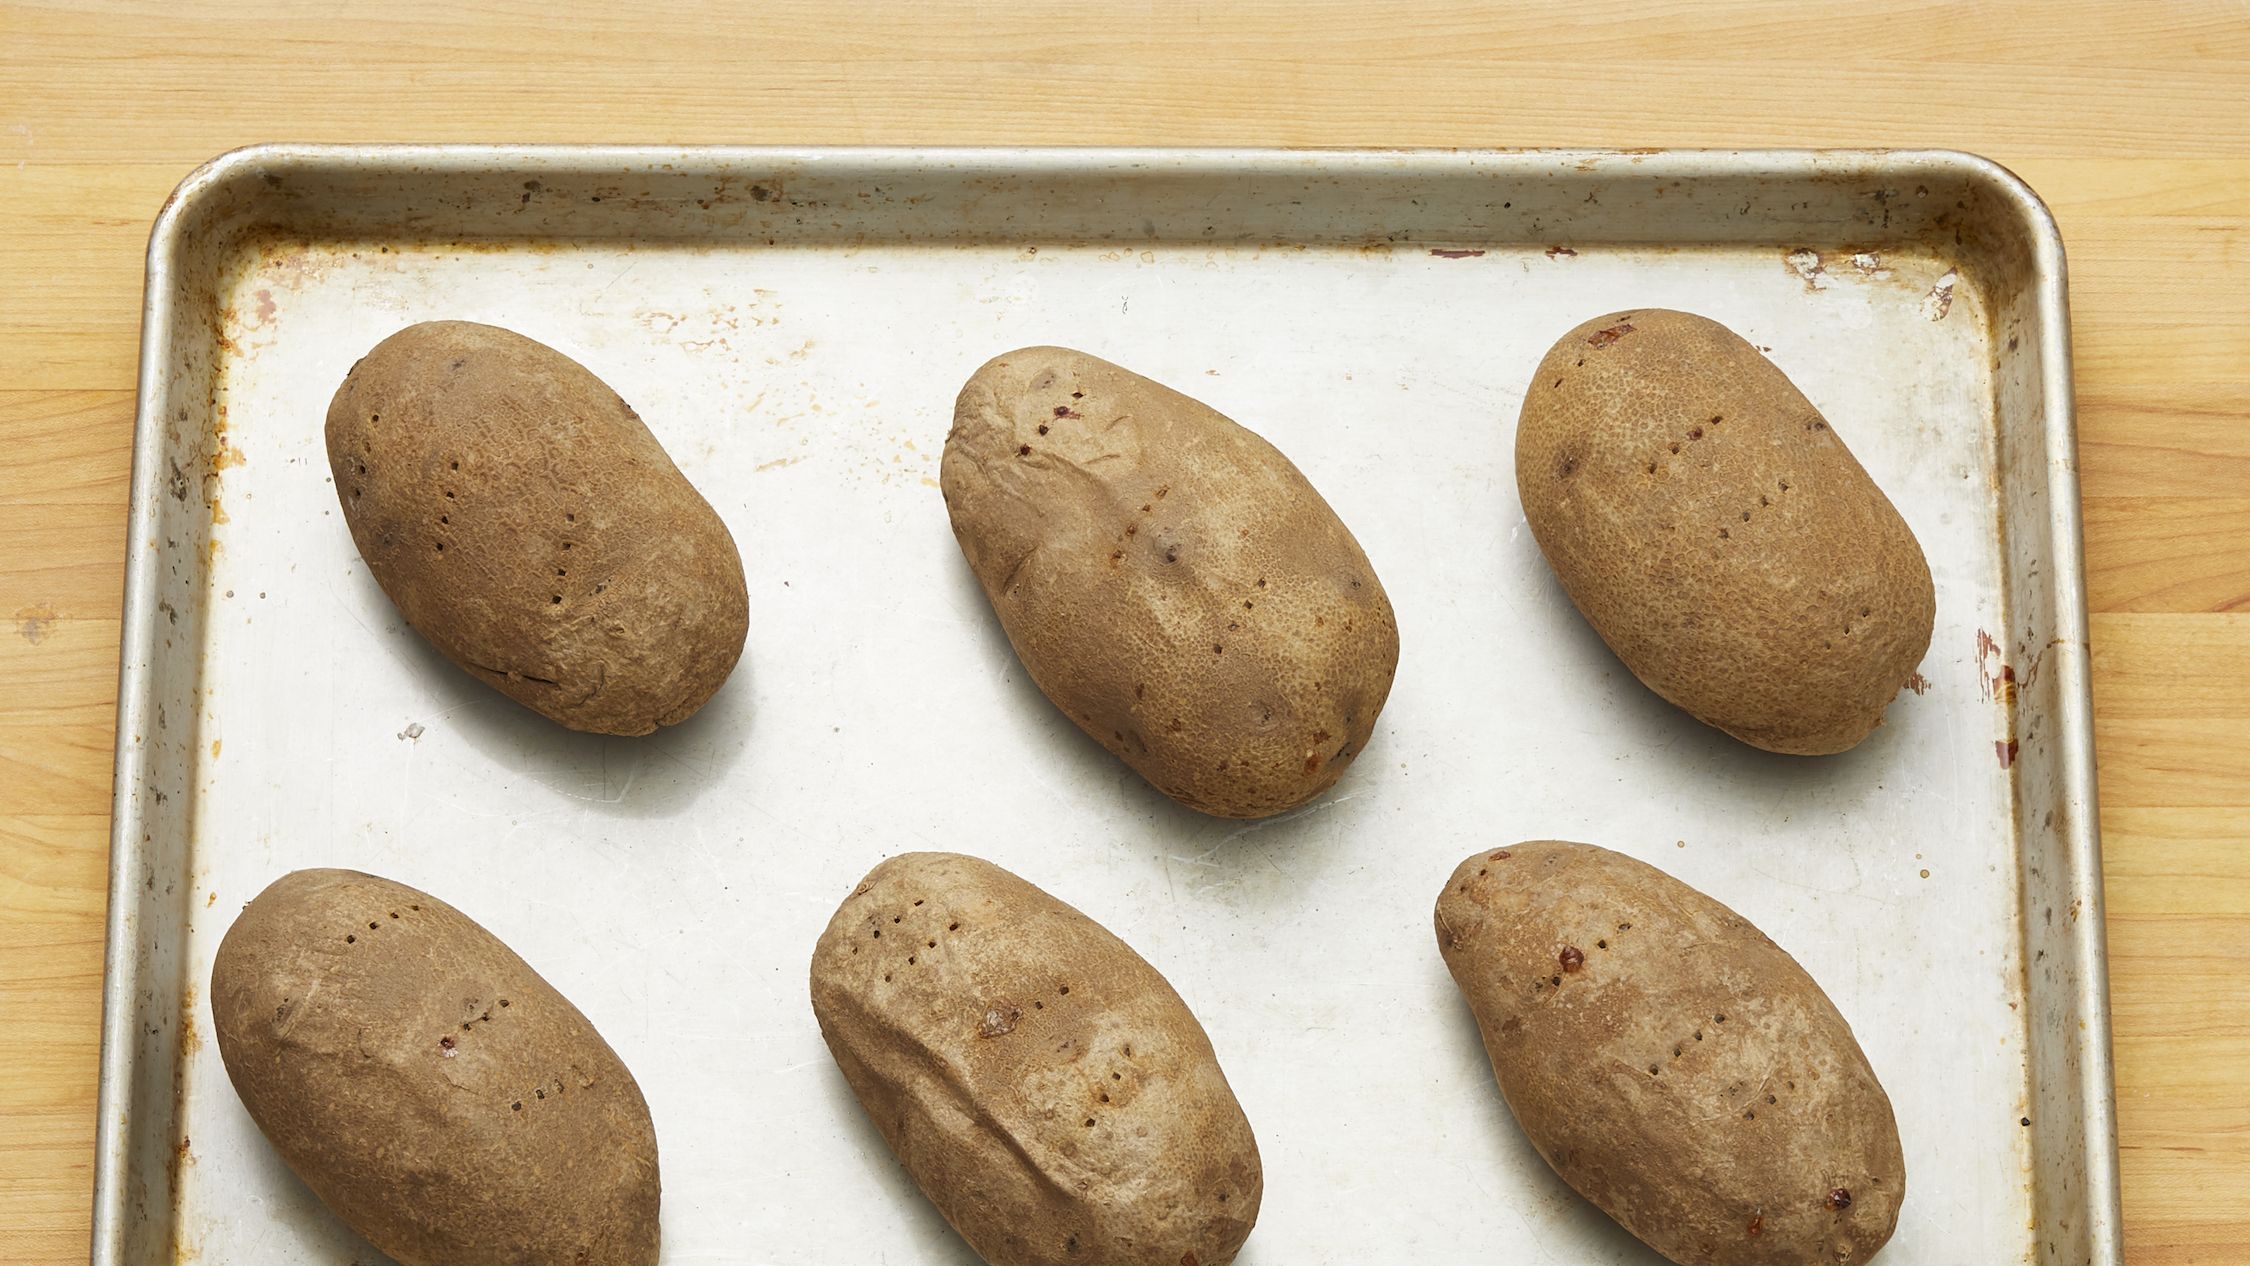 EASY Baked Potatoes in Oven (Crispy Skin & Fluffy Potatoes!)